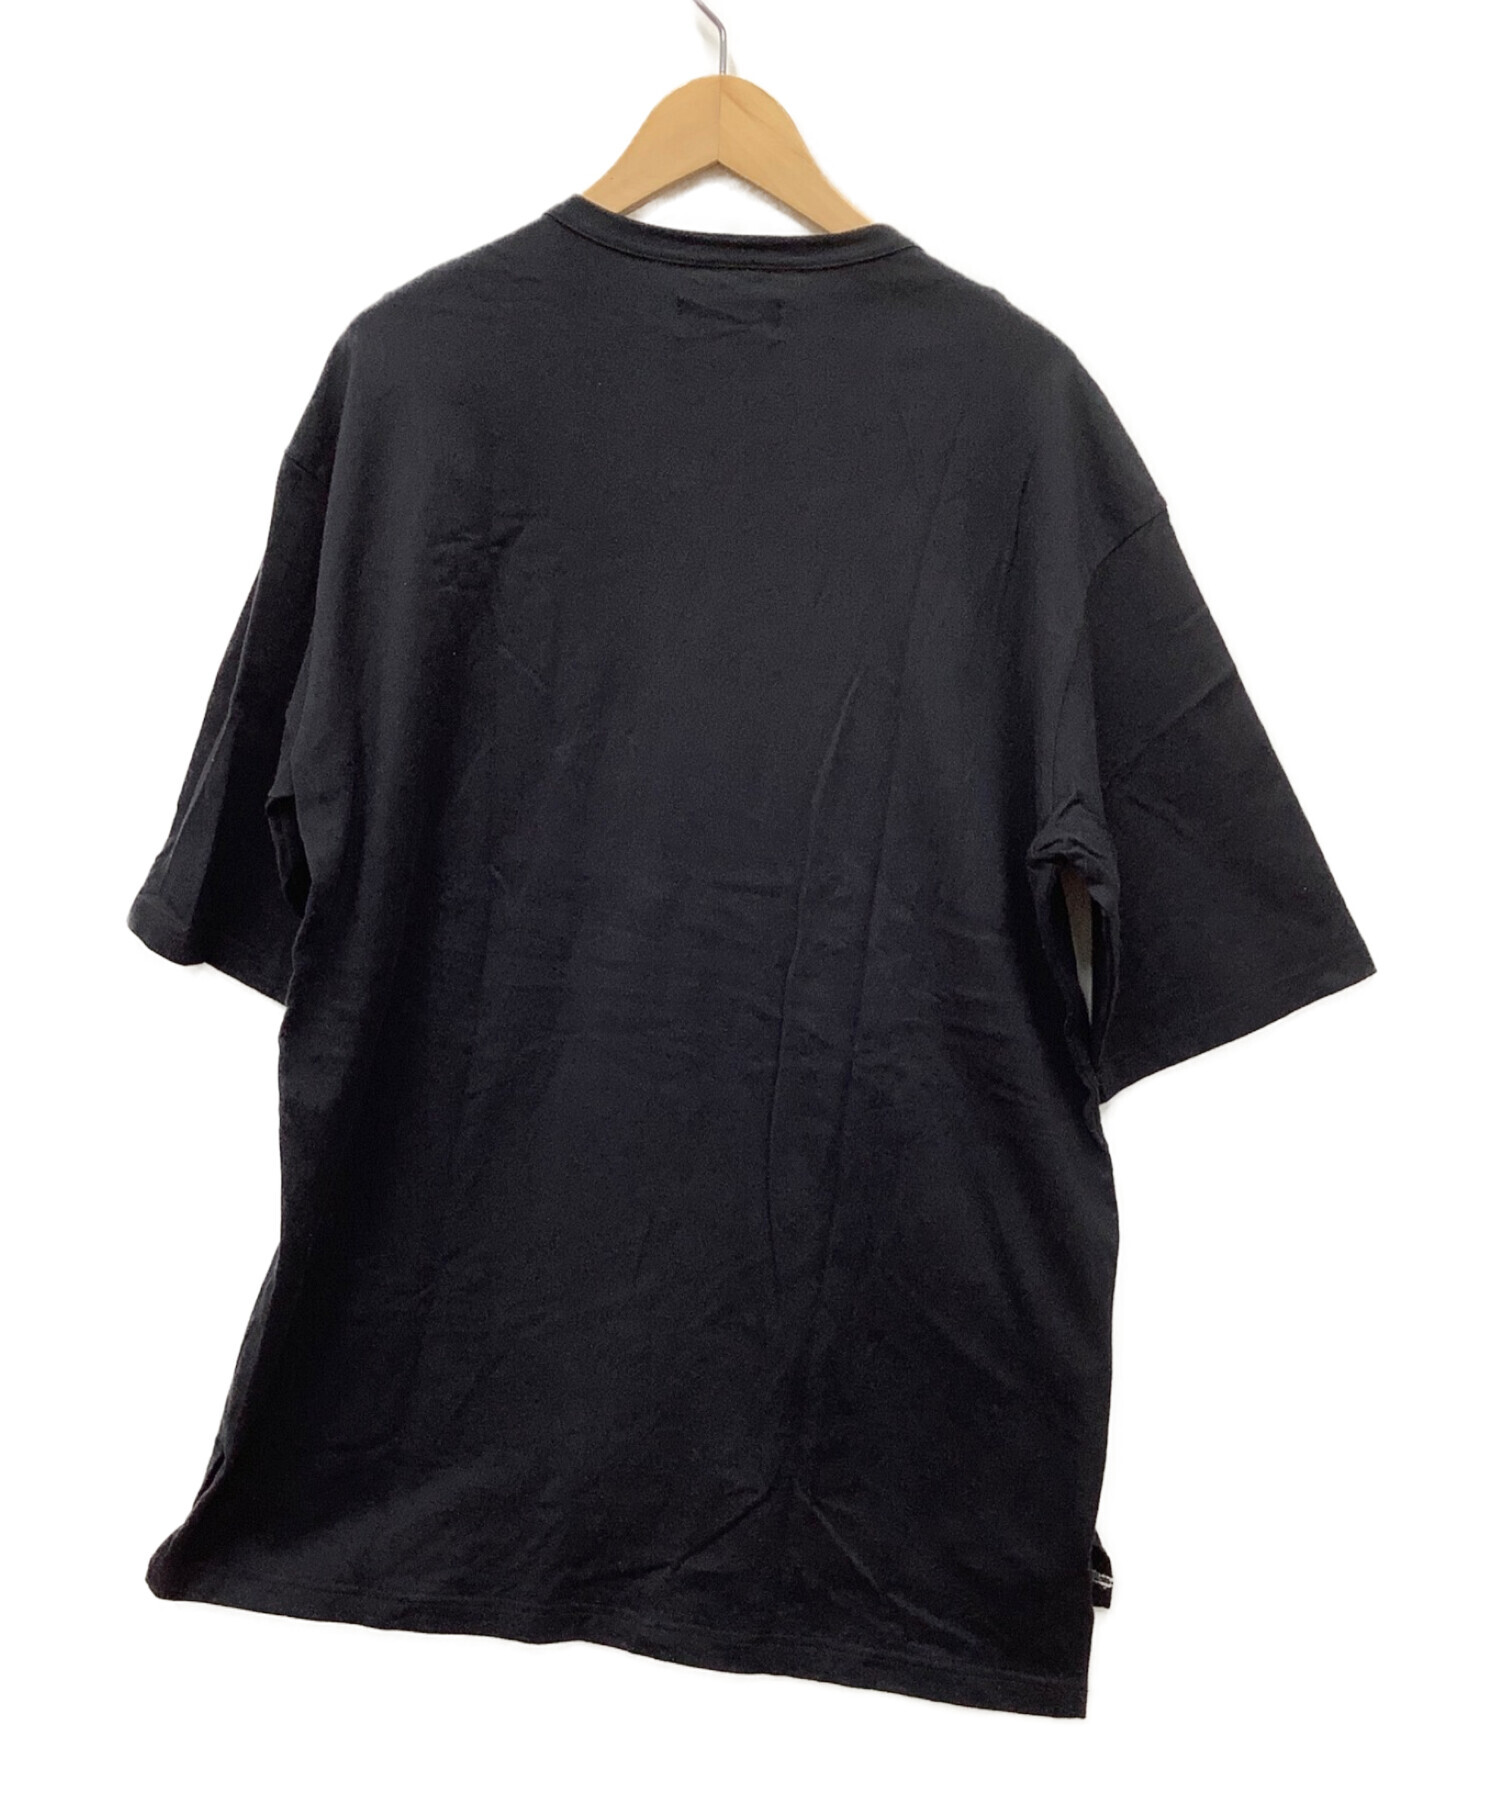 s'yte Yohji Yamamoto (サイト ヨウジヤマモト) Tシャツ ブラック サイズ:3